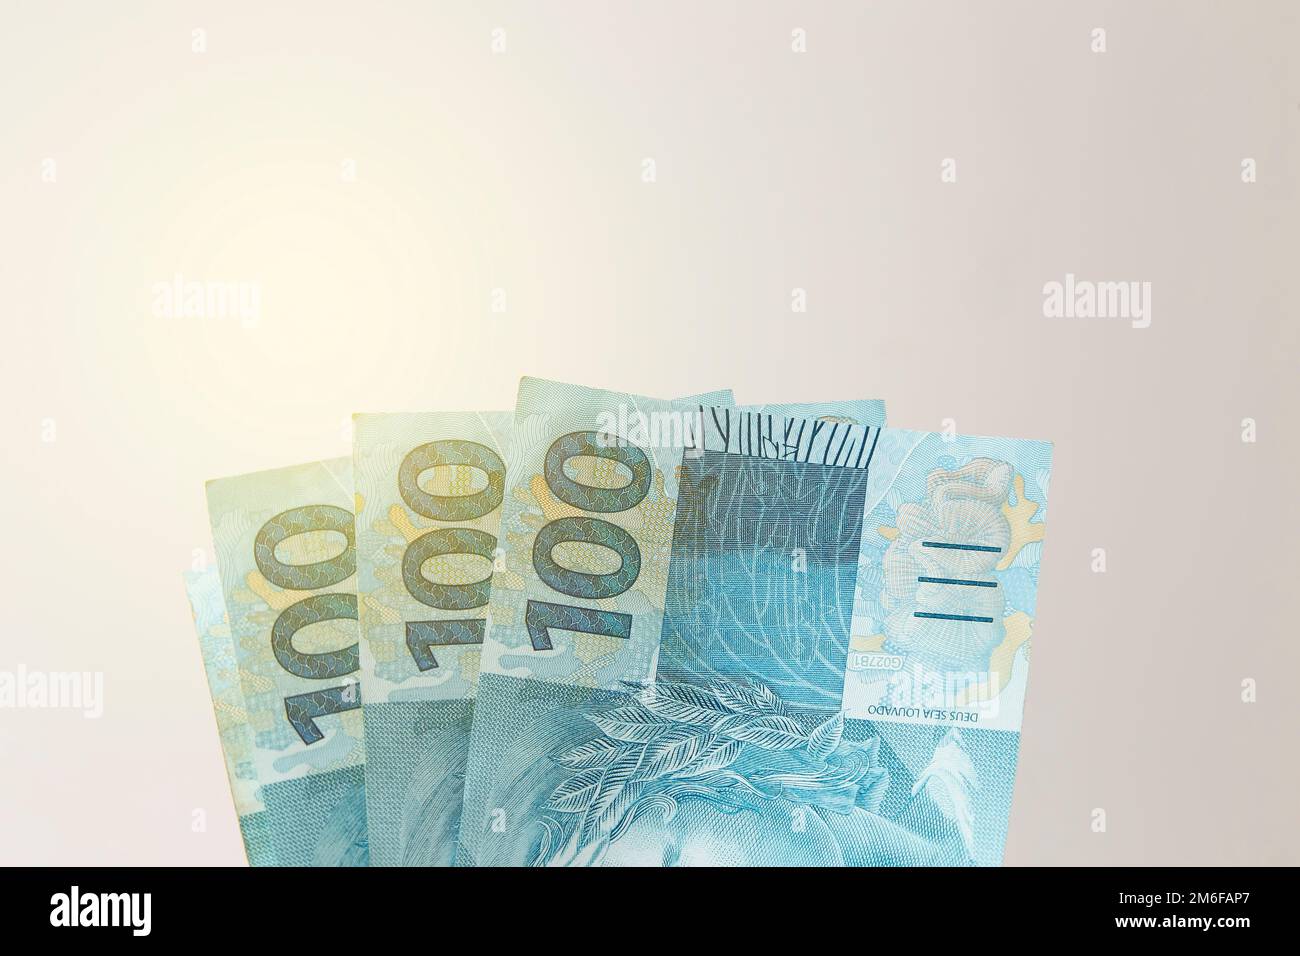 l'argent du brésil empilé sur une surface blanche - plusieurs centaines de factures réelles Banque D'Images